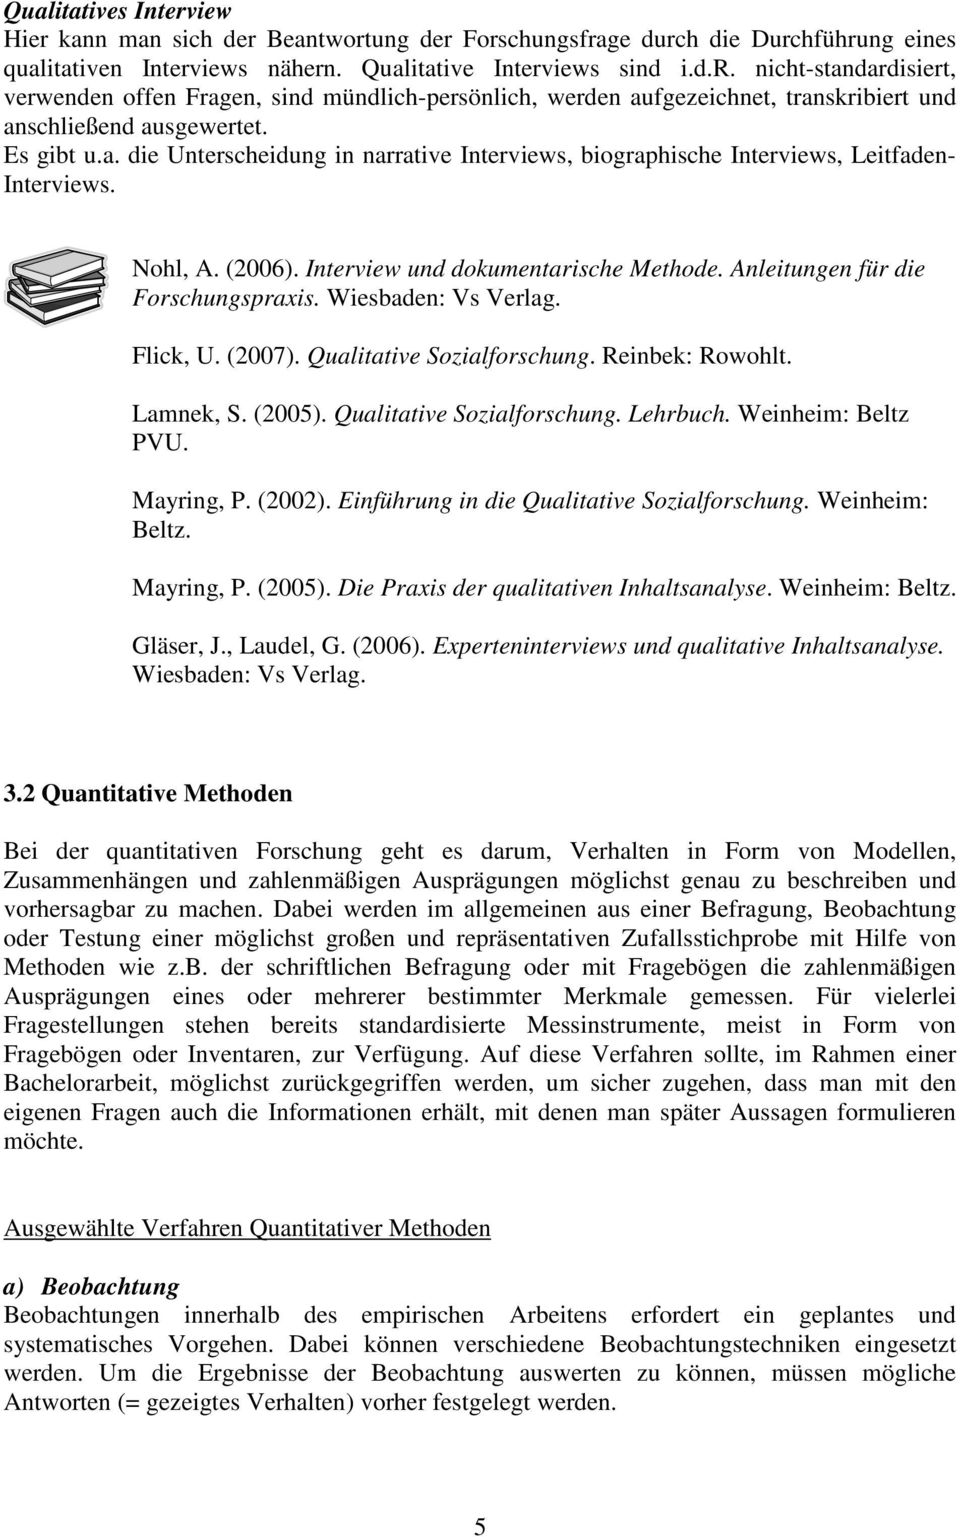 Wiesbaden: Vs Verlag. Flick, U. (2007). Qualitative Sozialforschung. Reinbek: Rowohlt. Lamnek, S. (2005). Qualitative Sozialforschung. Lehrbuch. Weinheim: Beltz PVU. Mayring, P. (2002).